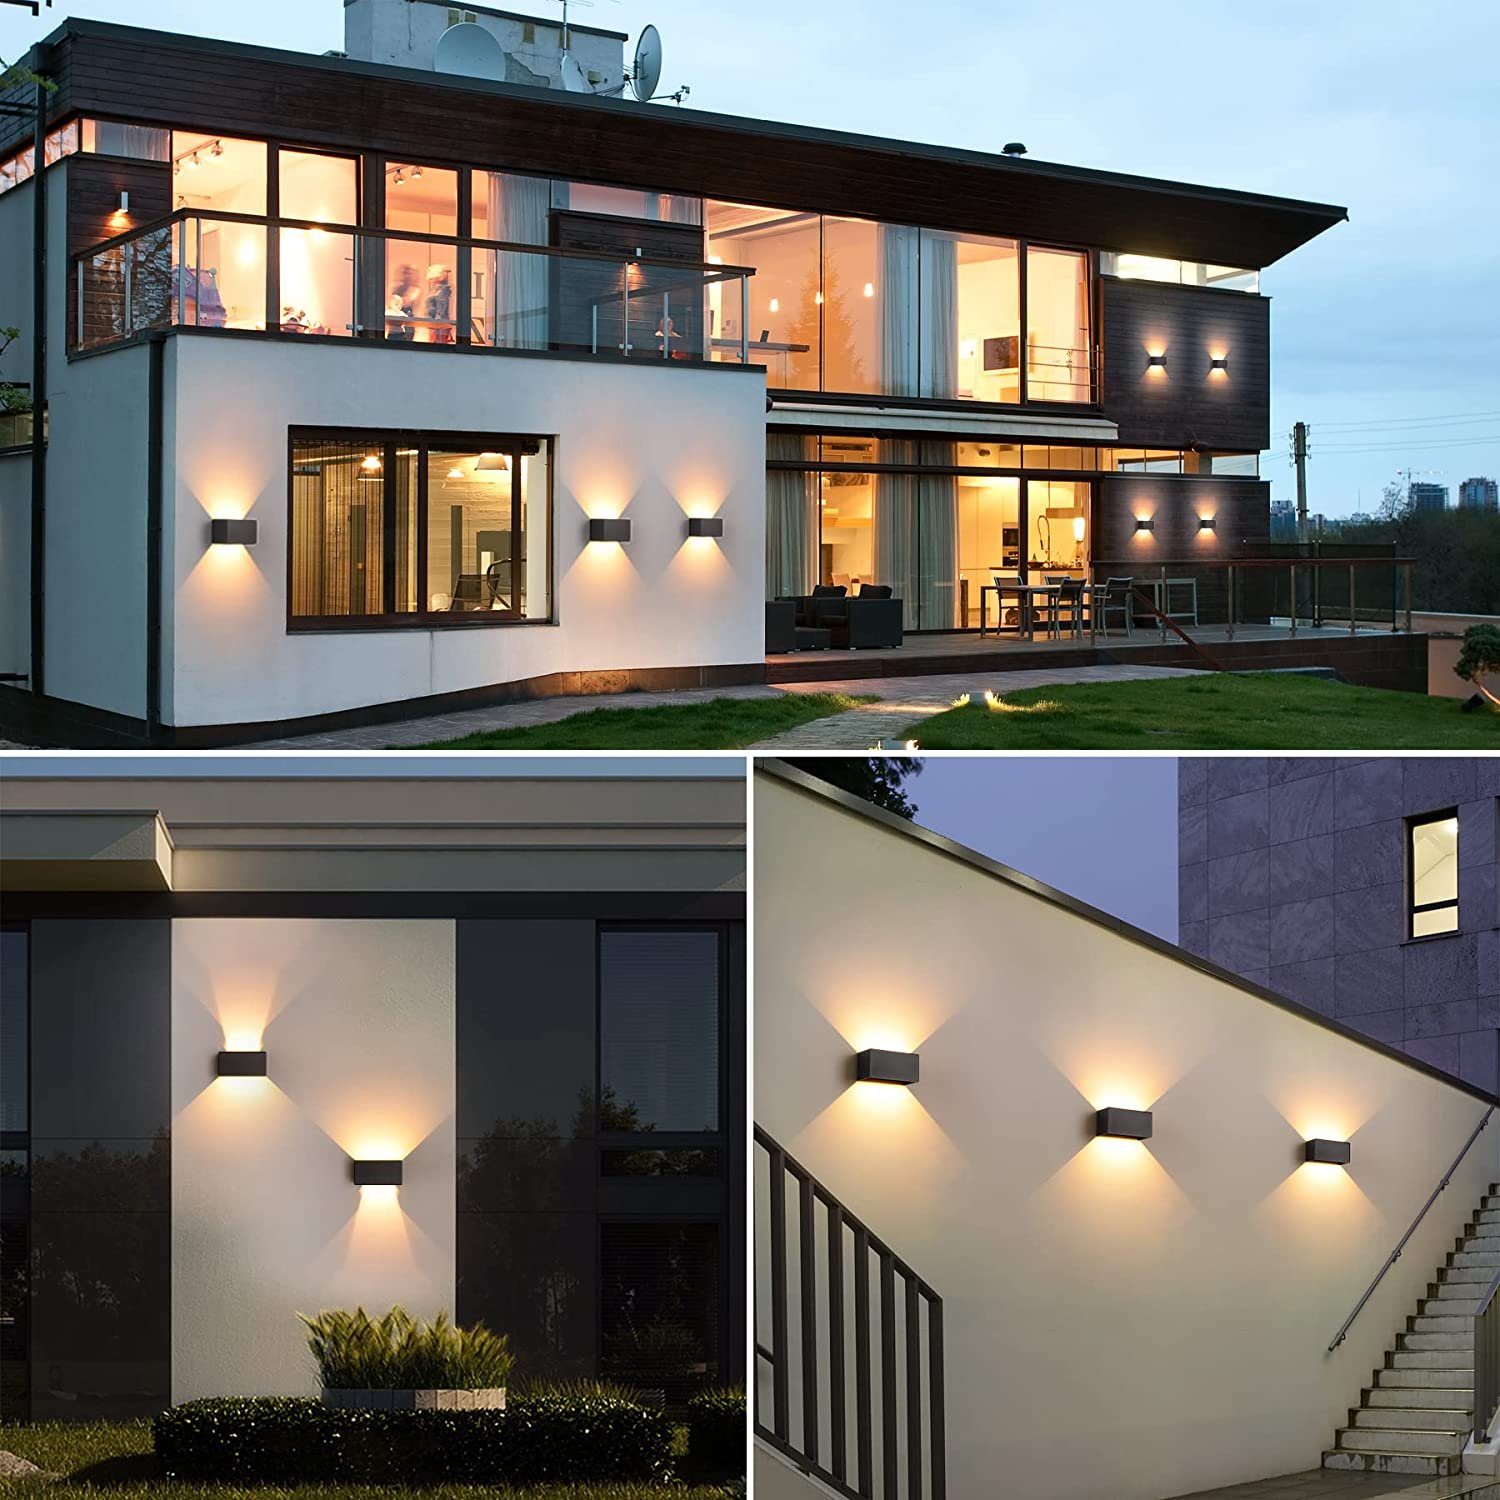 Wandlichter AKKEE Wandlampe, für IP65 24W Wandleuchte Lichtstrahl Innen/Außen LED,Außenleuchte Wand Außenwandleuchten Down, Warmweiß, UP Einstellbar Aussenleuchte Balkon,Wohnzimmer,Schlafzimmer